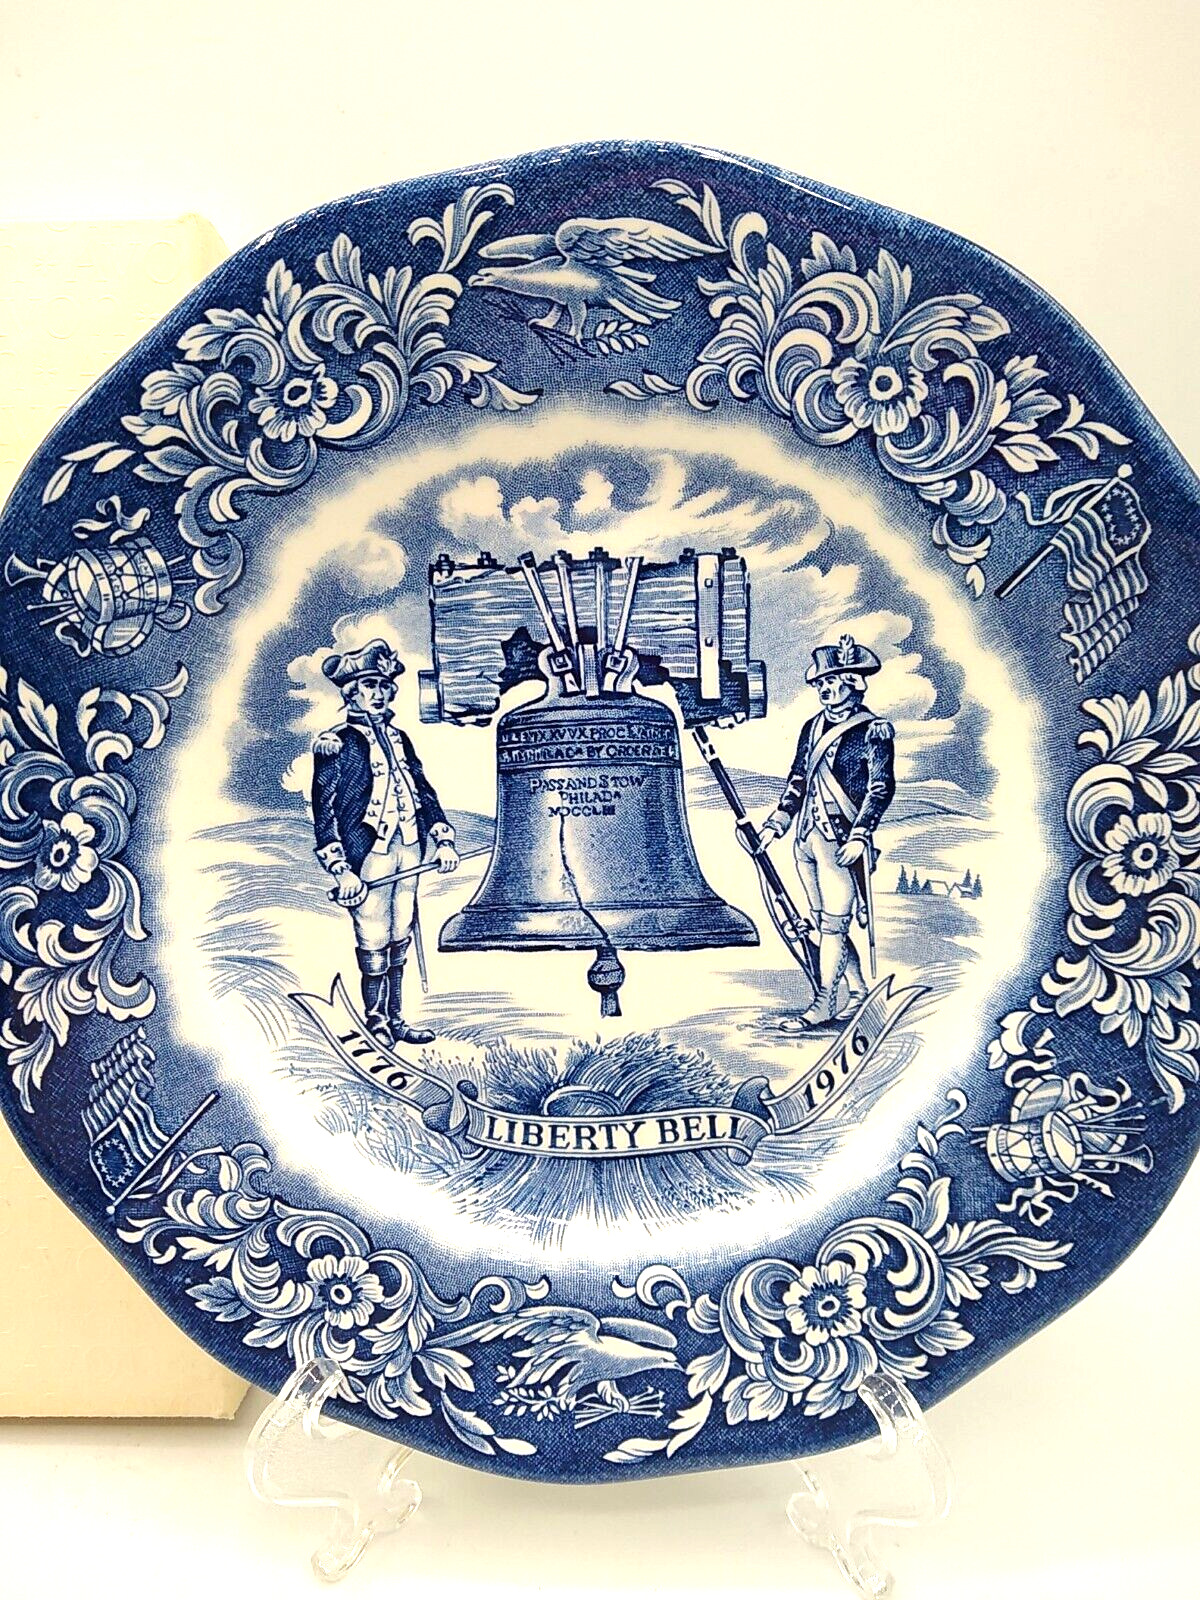 Avon Liberty Bell Bicentennial Plate 1976 - England Wedgewood Blue & White